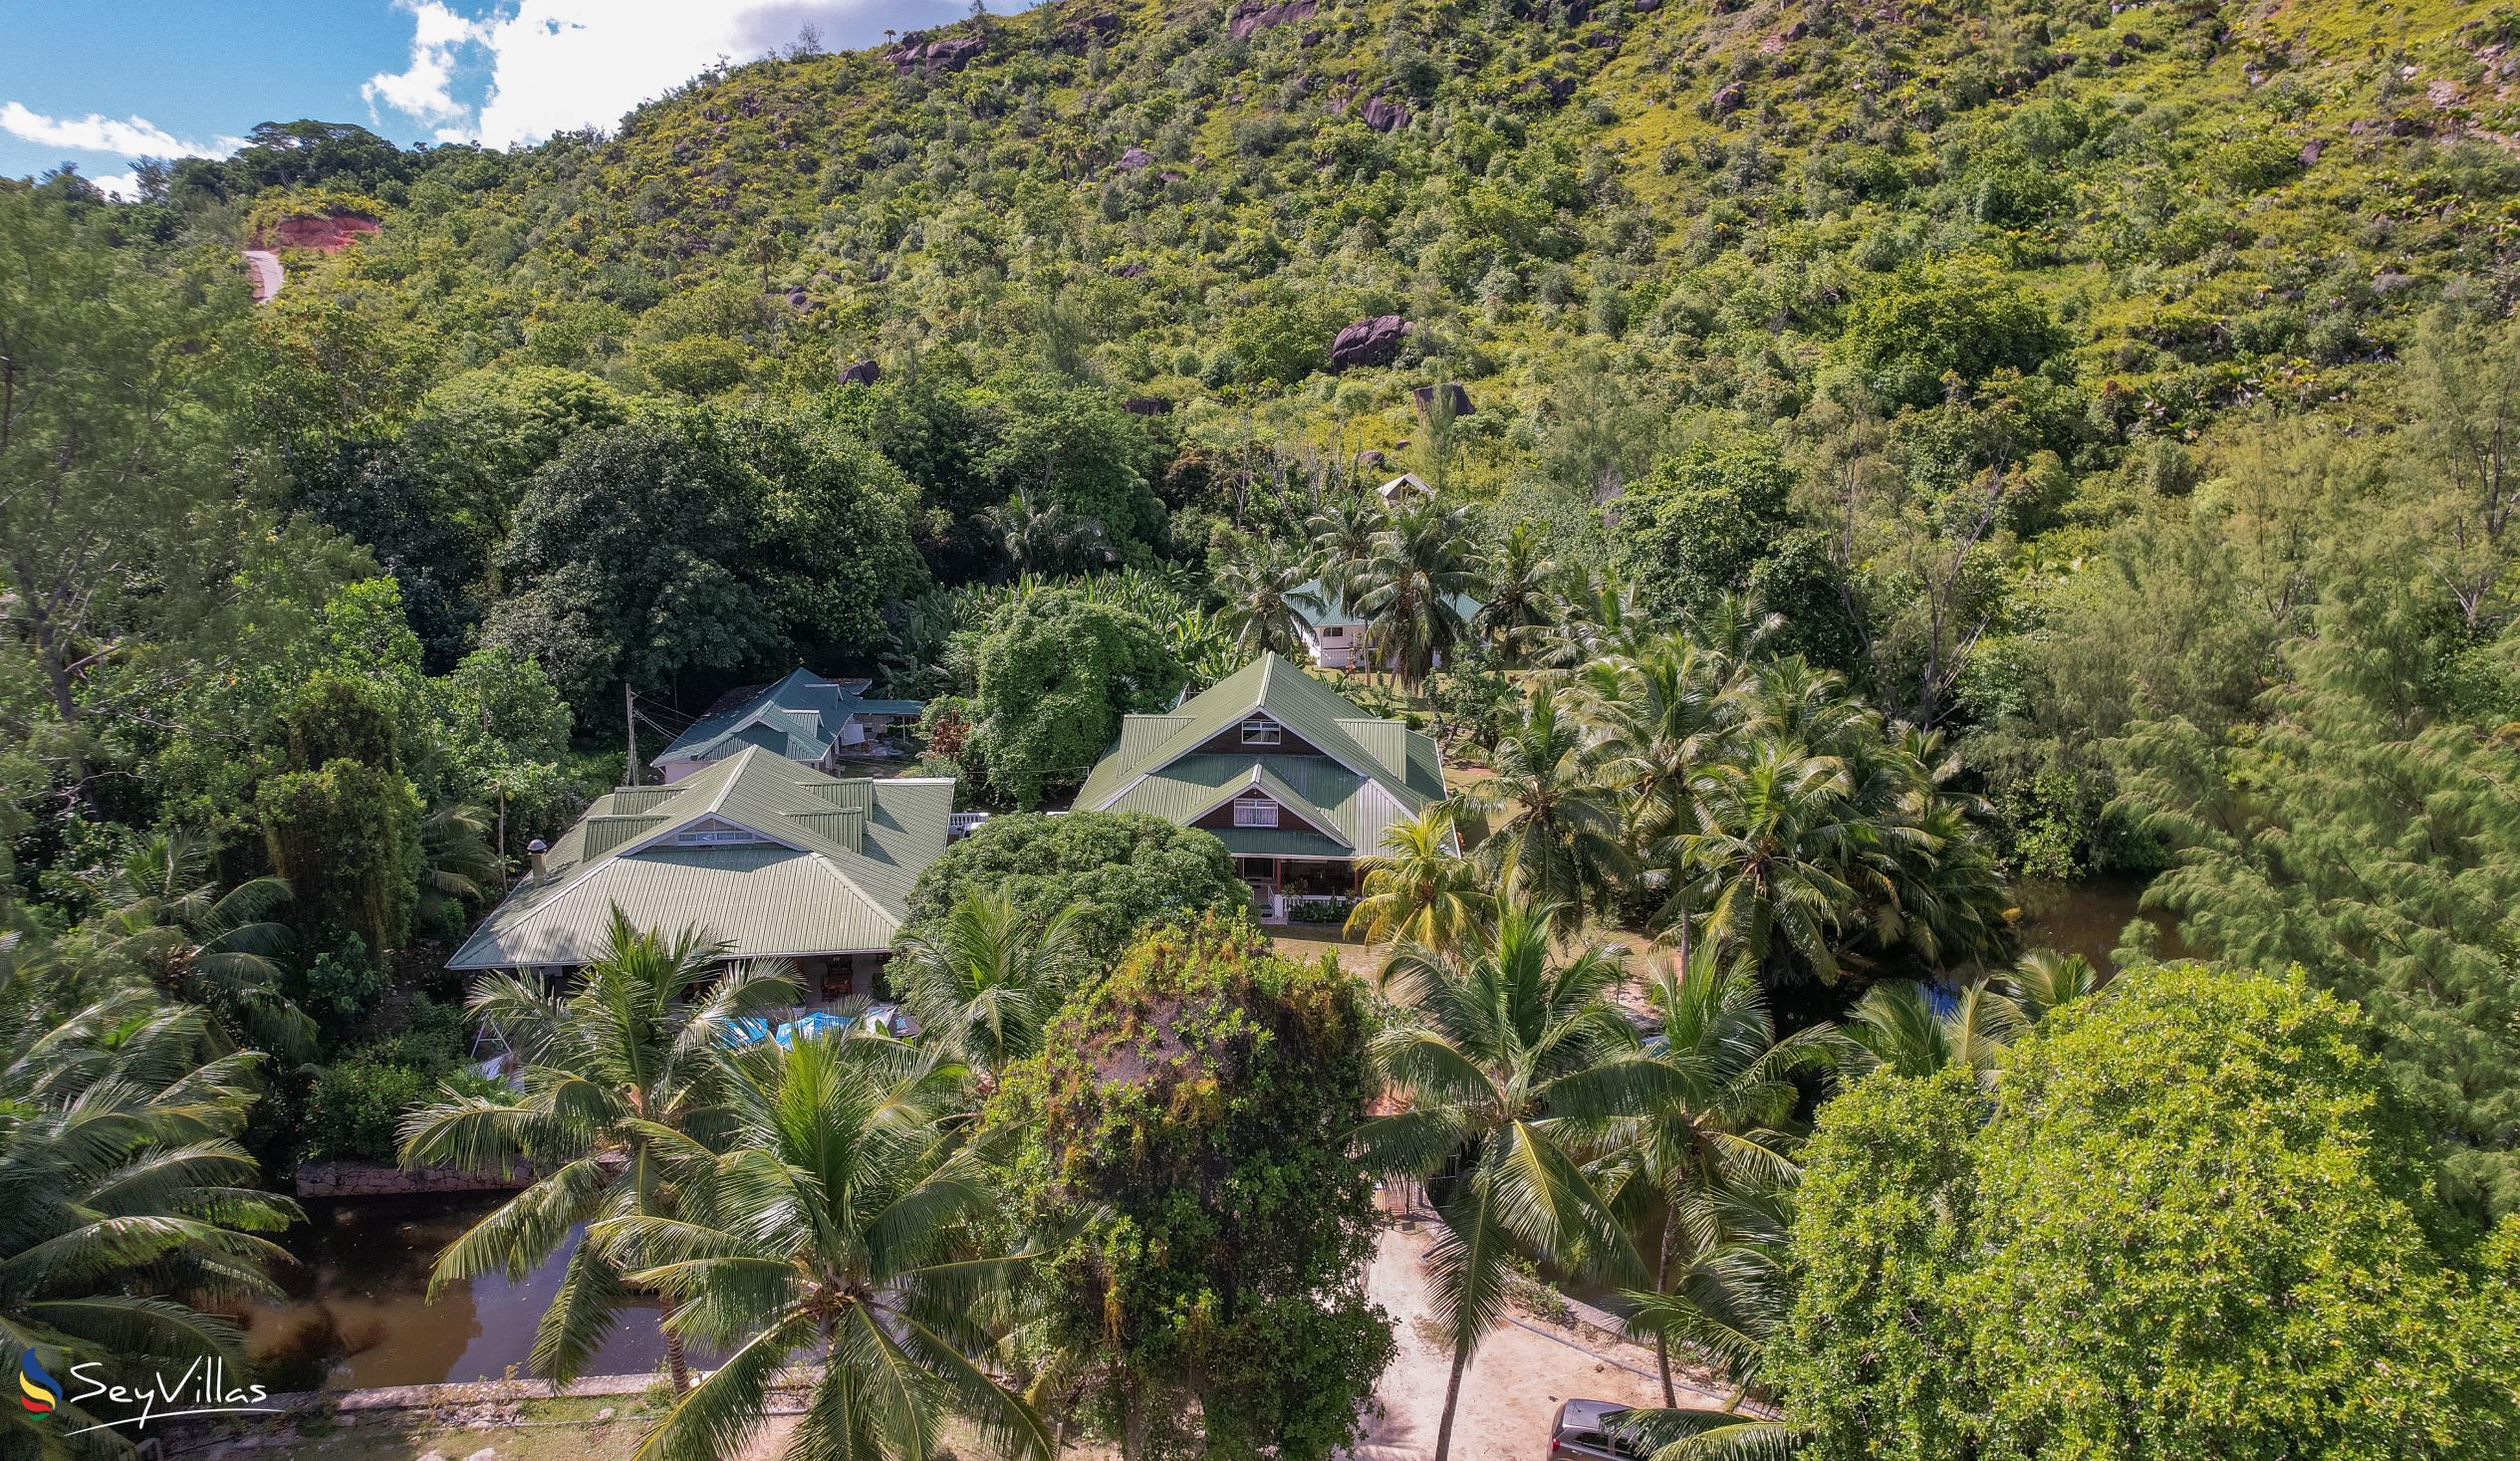 Foto 5: Le Chevalier Bay Guesthouse - Aussenbereich - Praslin (Seychellen)